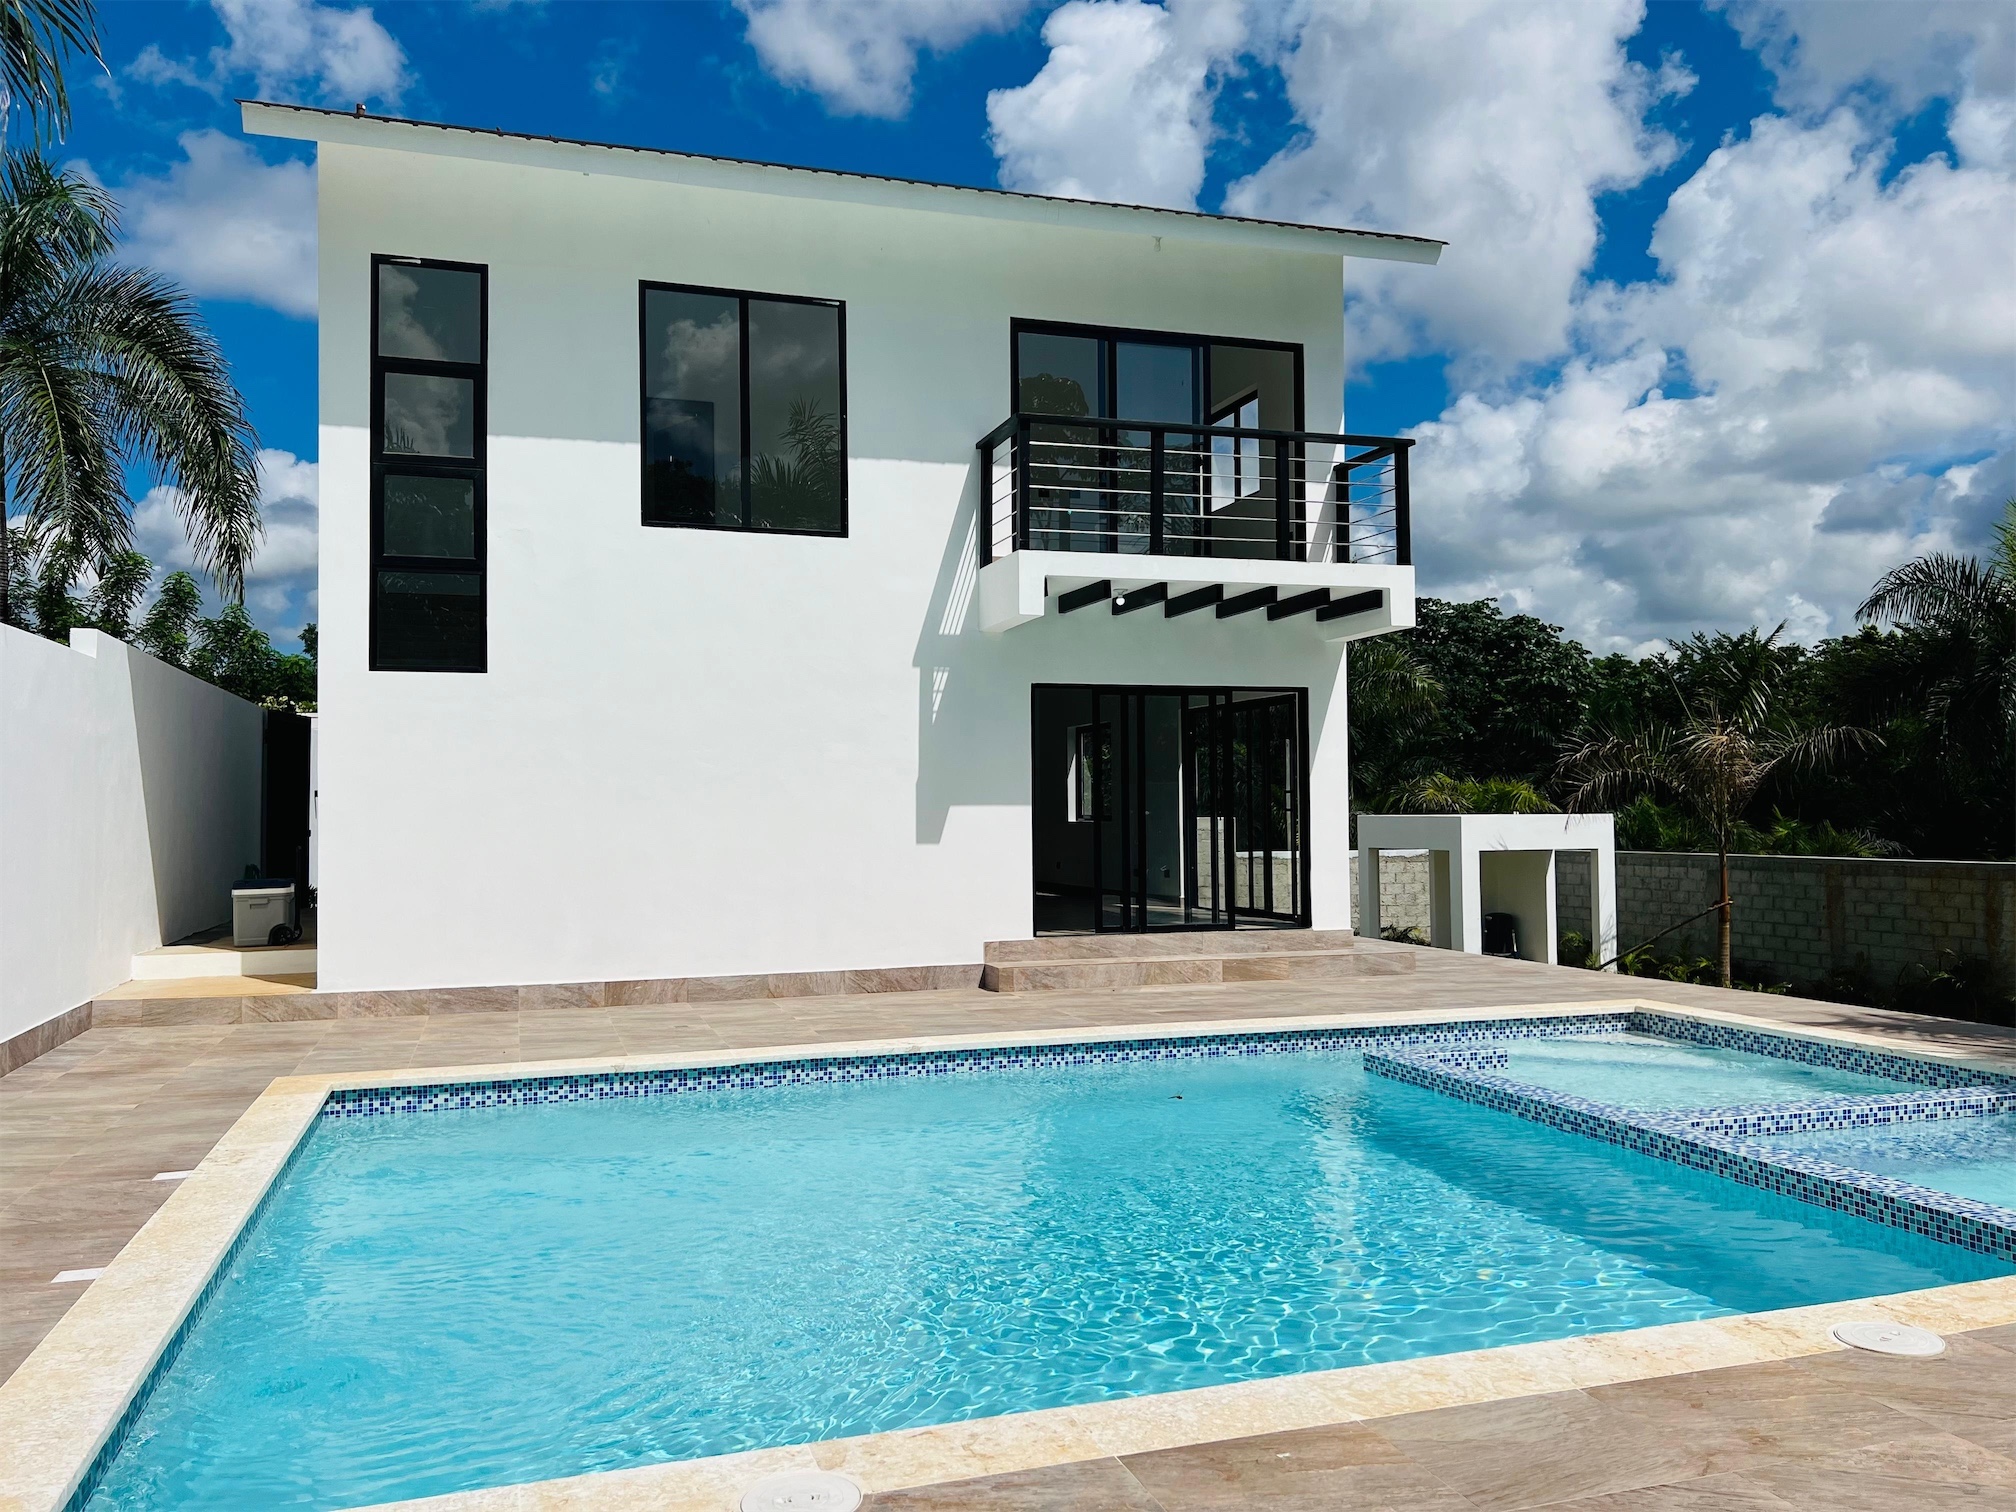 casas vacacionales y villas - Venta de Villa  con piscina en Matua la cuaba a 45 minutos de Santo Domingo 0